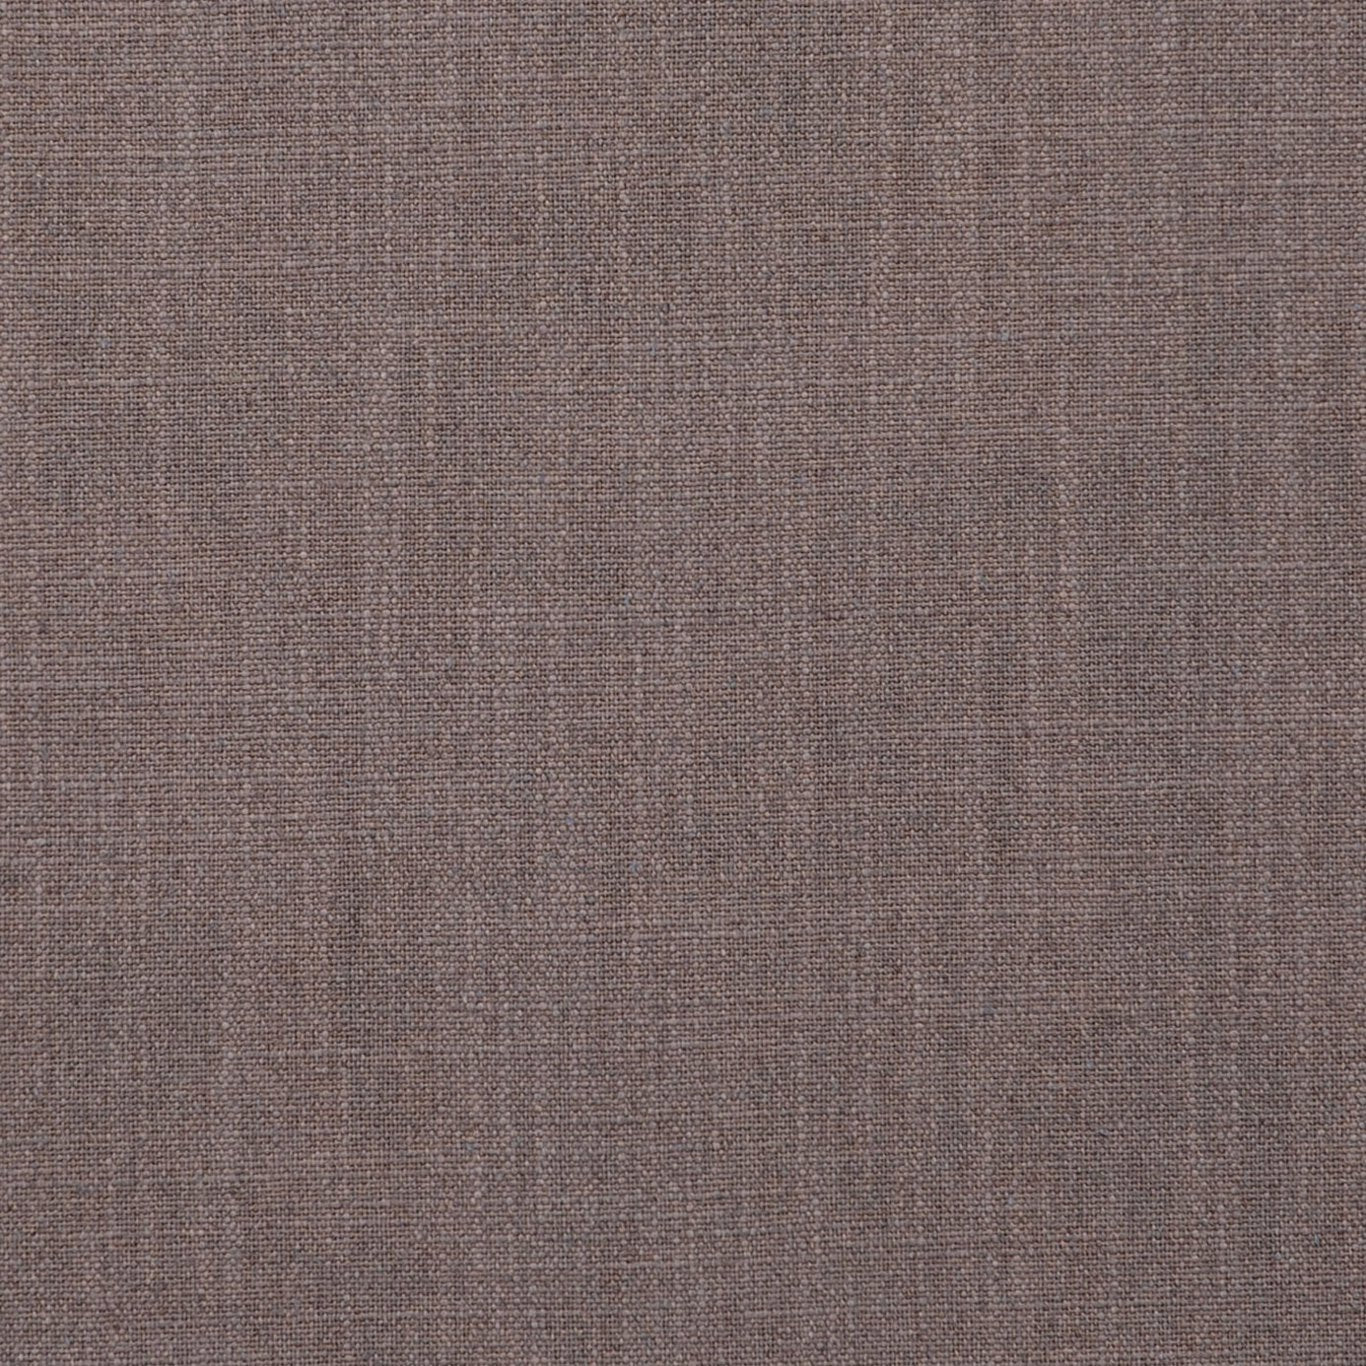 Easton Fabric by Clarke & Clarke - F0736/06 - Nickel